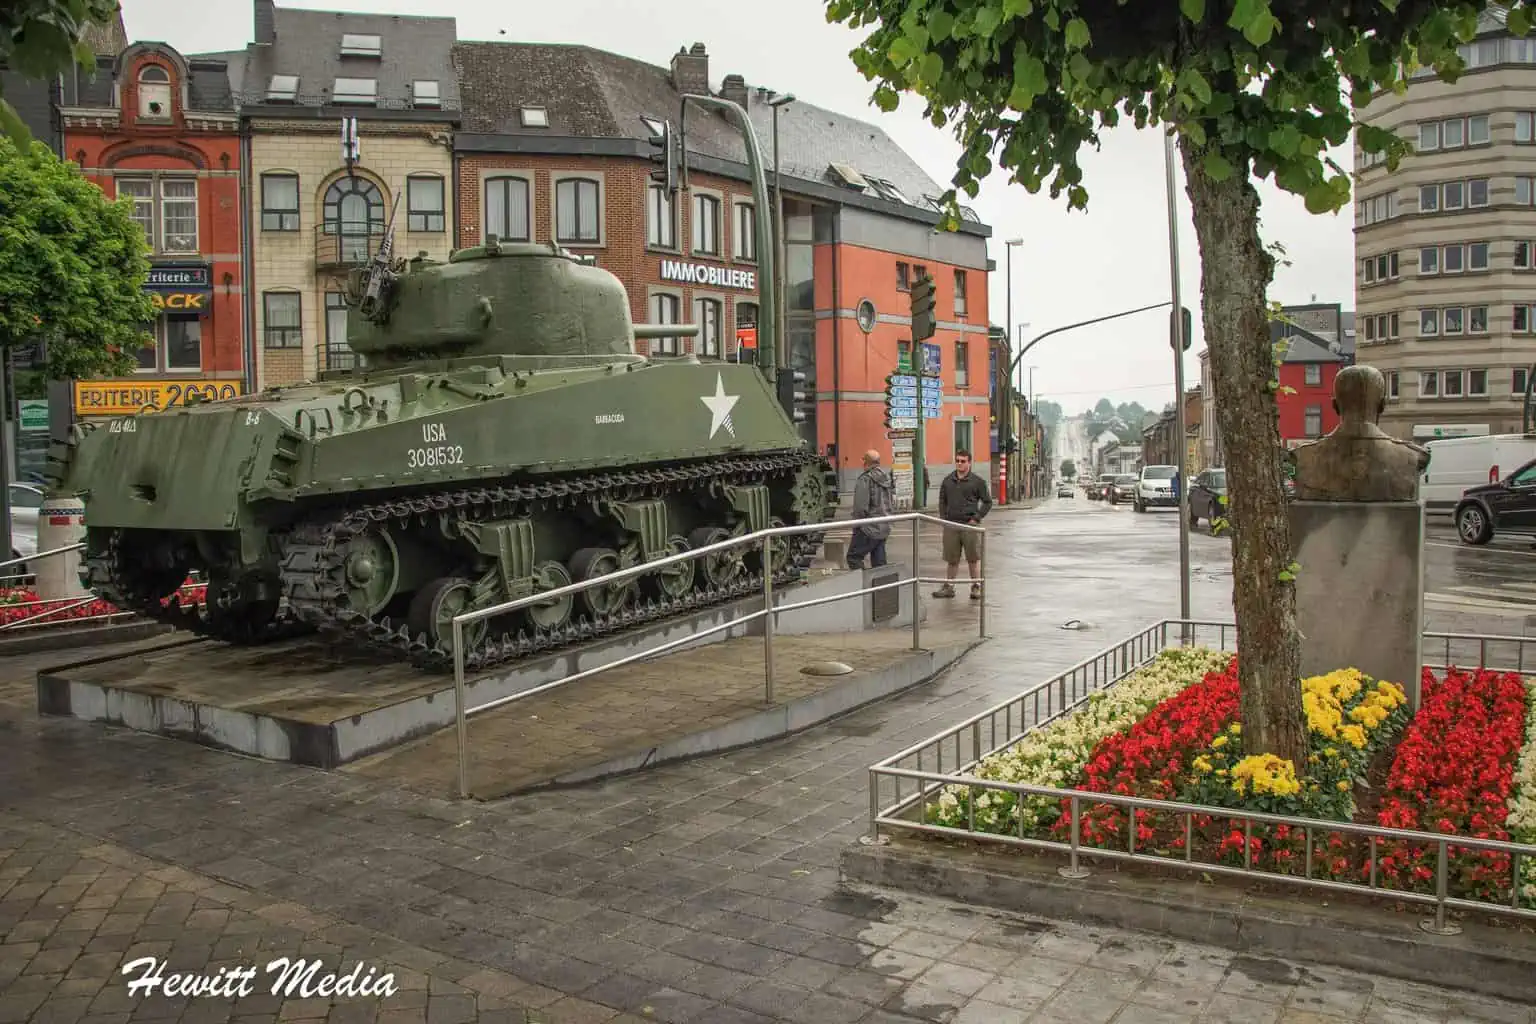 Bastogne Visitor Guide